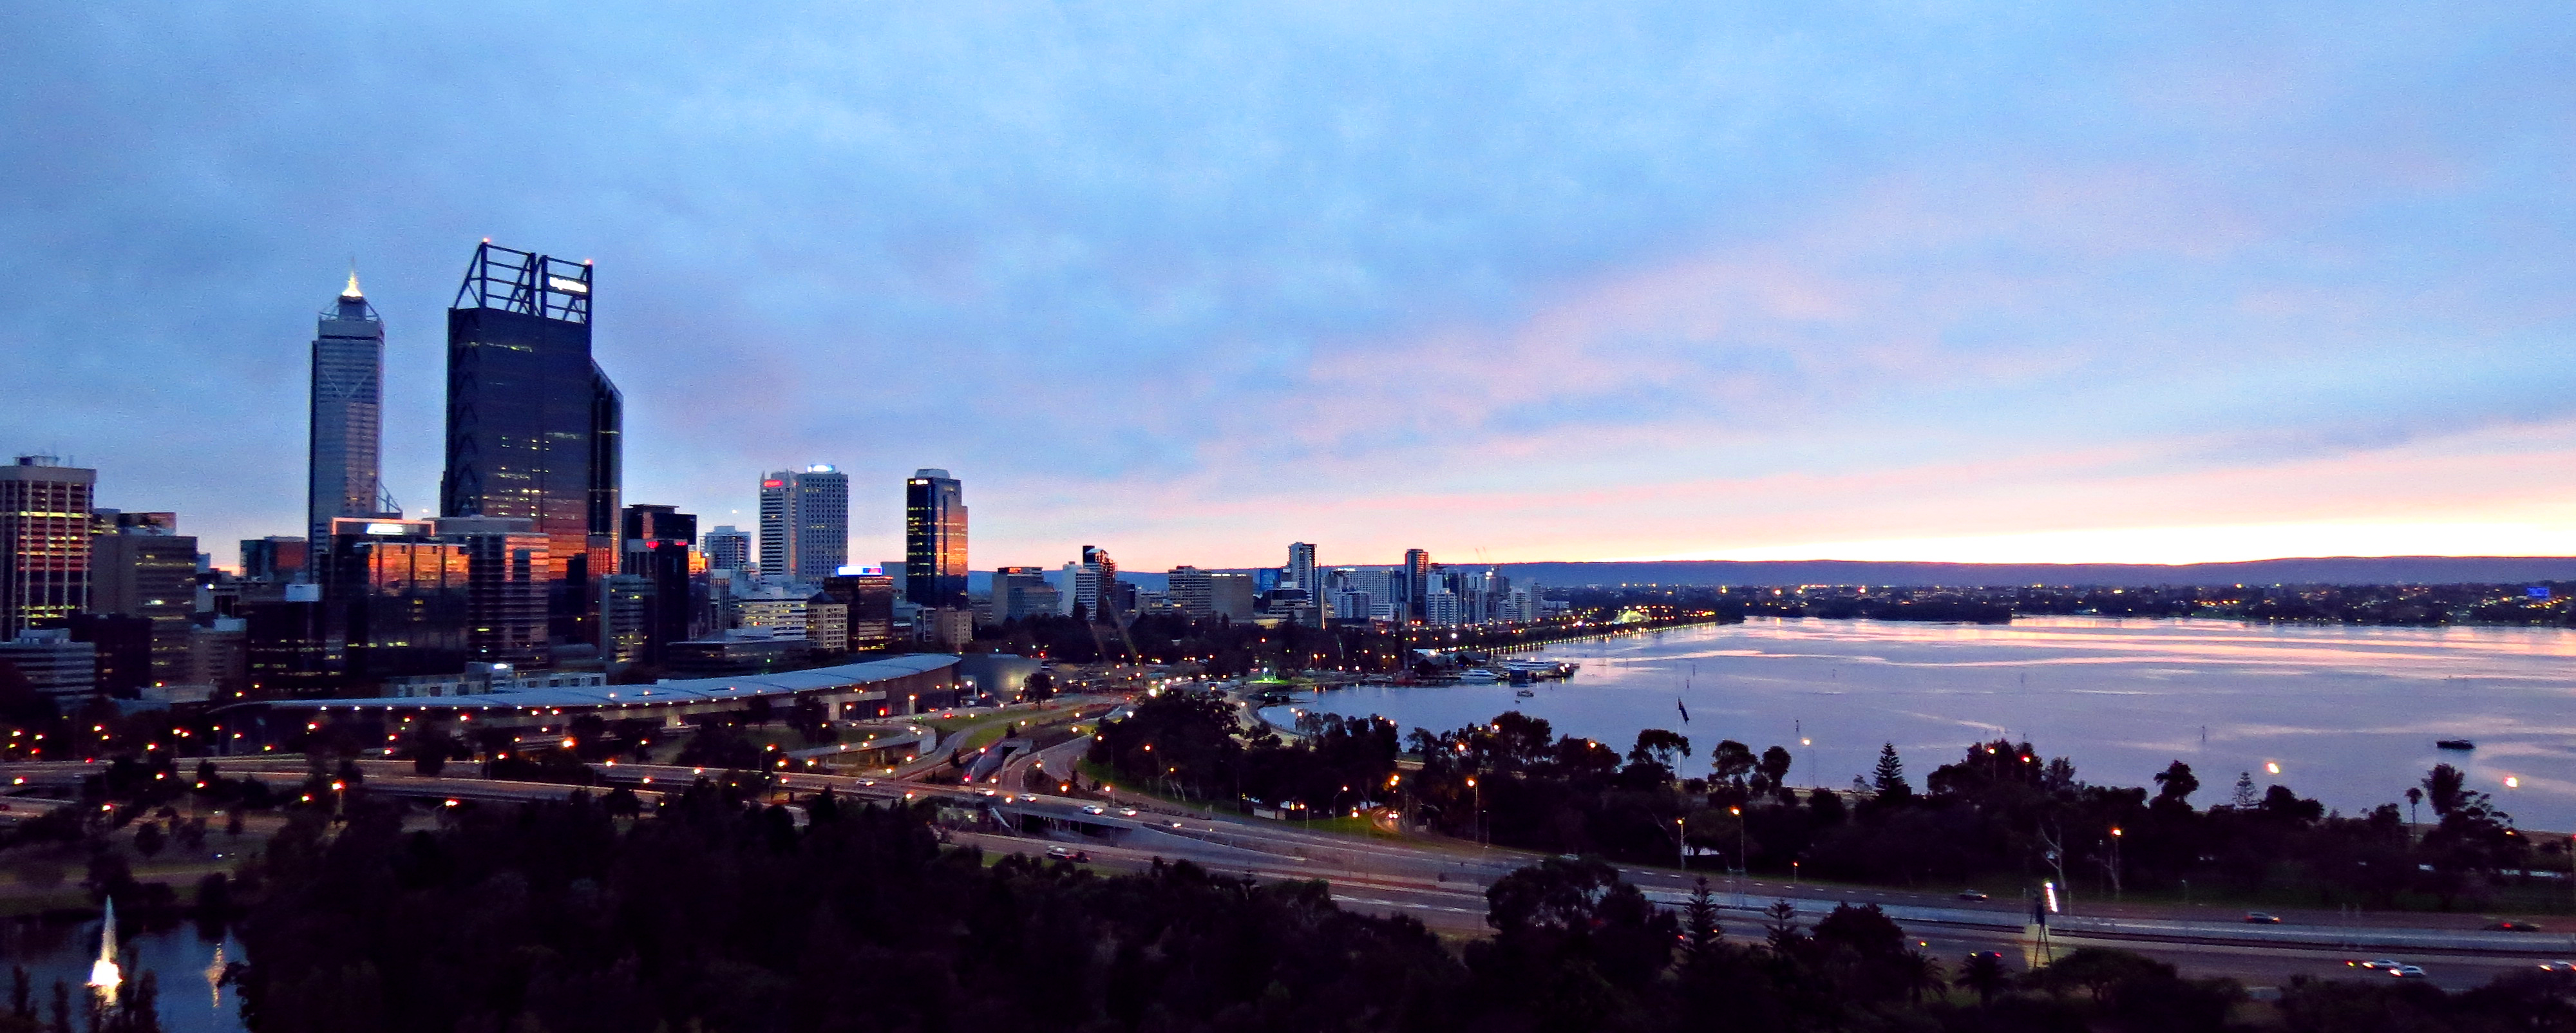 Perth City at Dawn